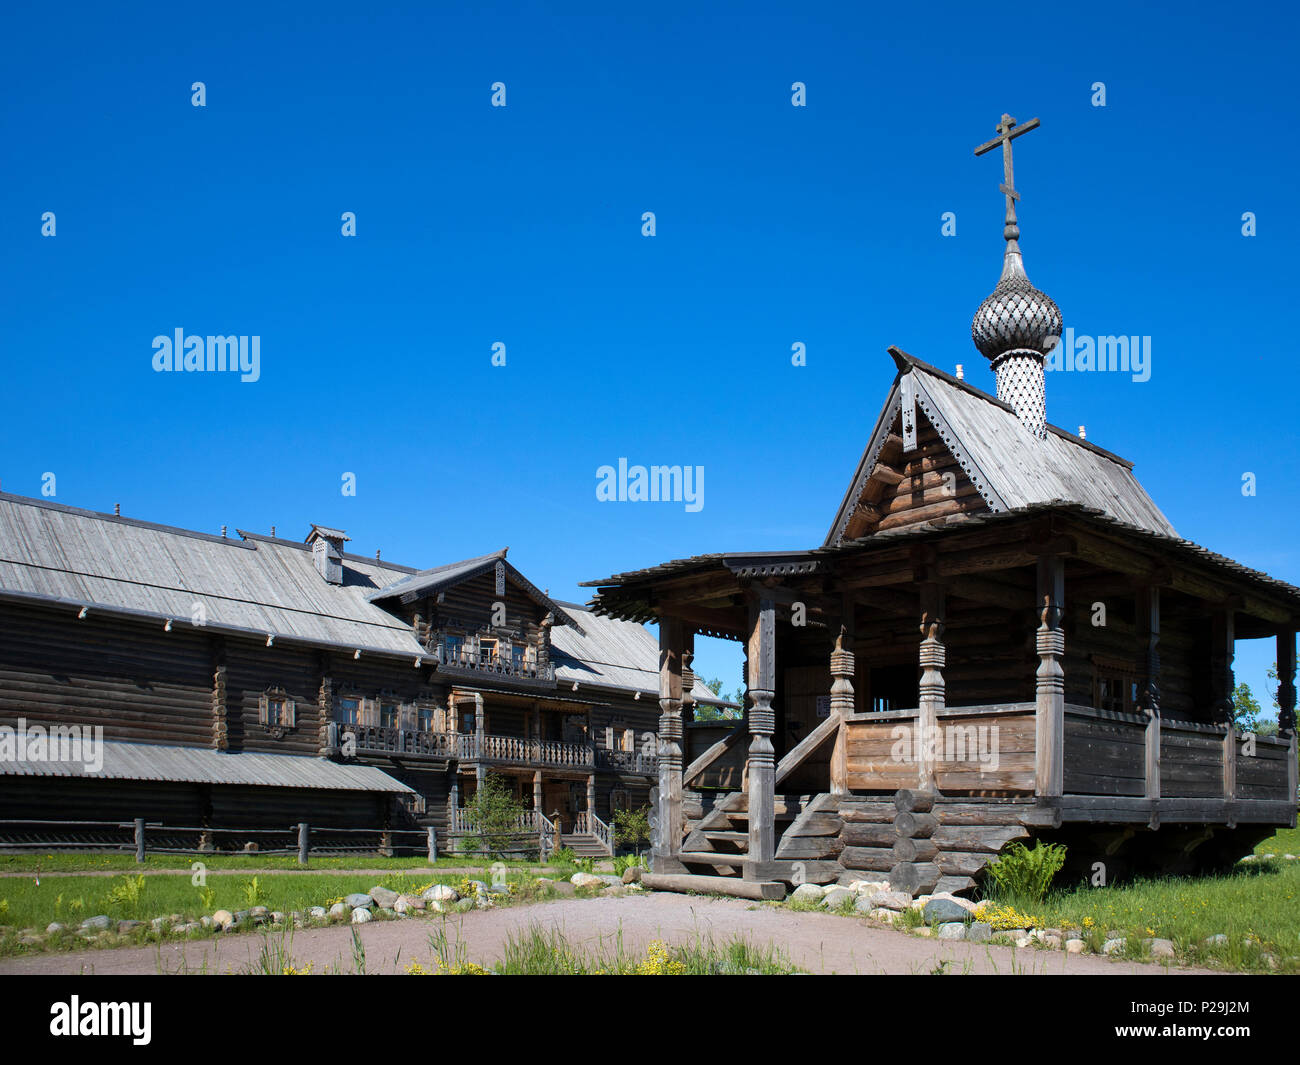 L'architecture en bois de l'ancienne Russie, petite église en bois contre le ciel bleu Banque D'Images